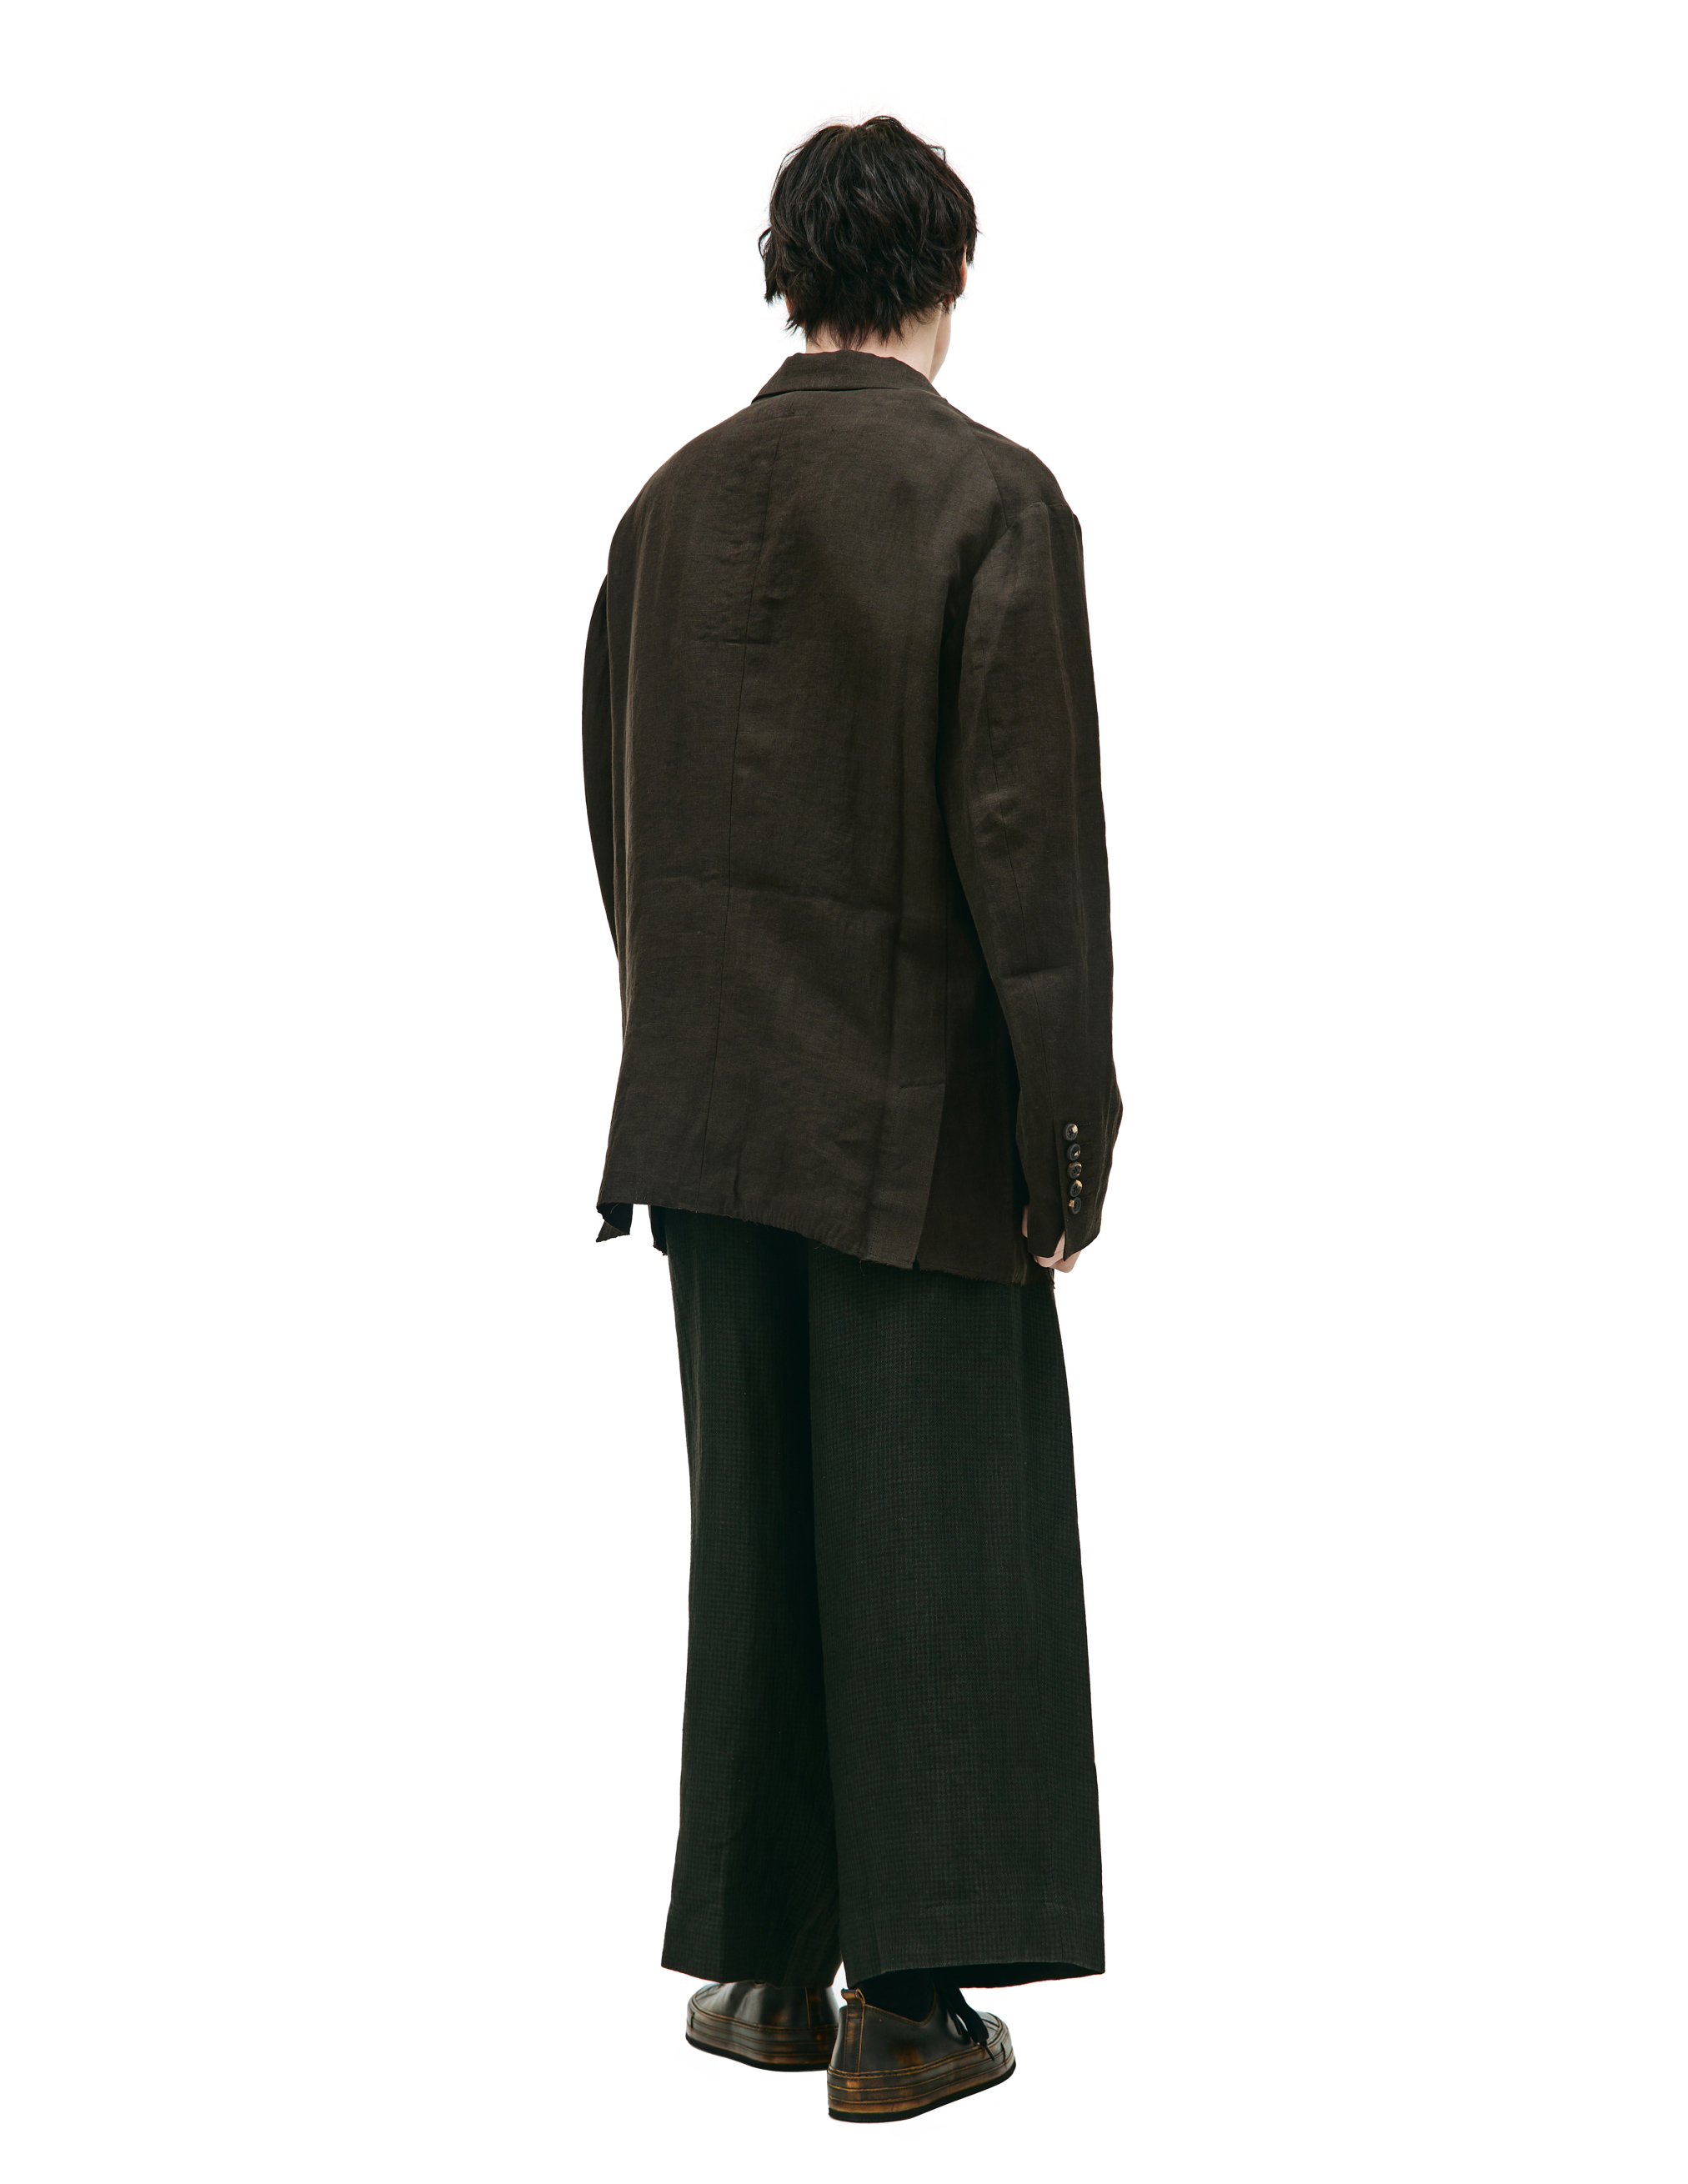 Льняной пиджак с карманами Ziggy Chen 0M2310901, размер 50 - фото 3